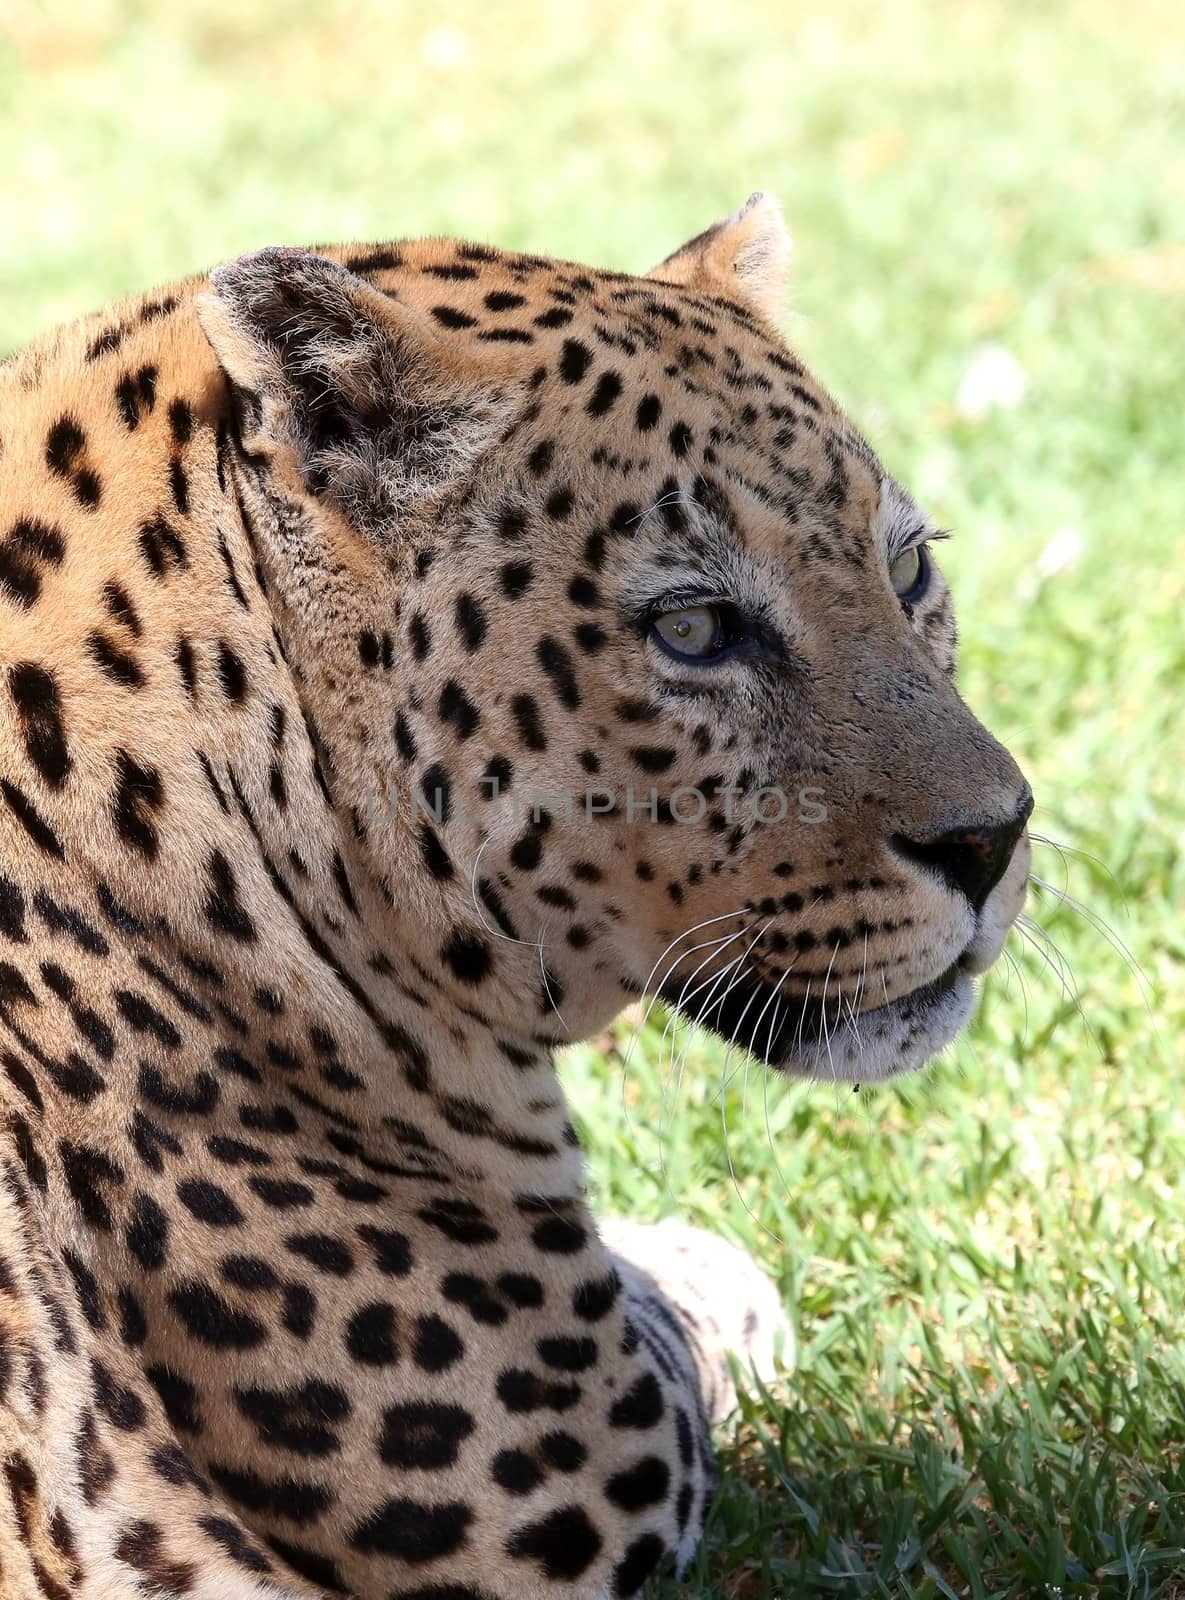 Leopard Portrait by fouroaks